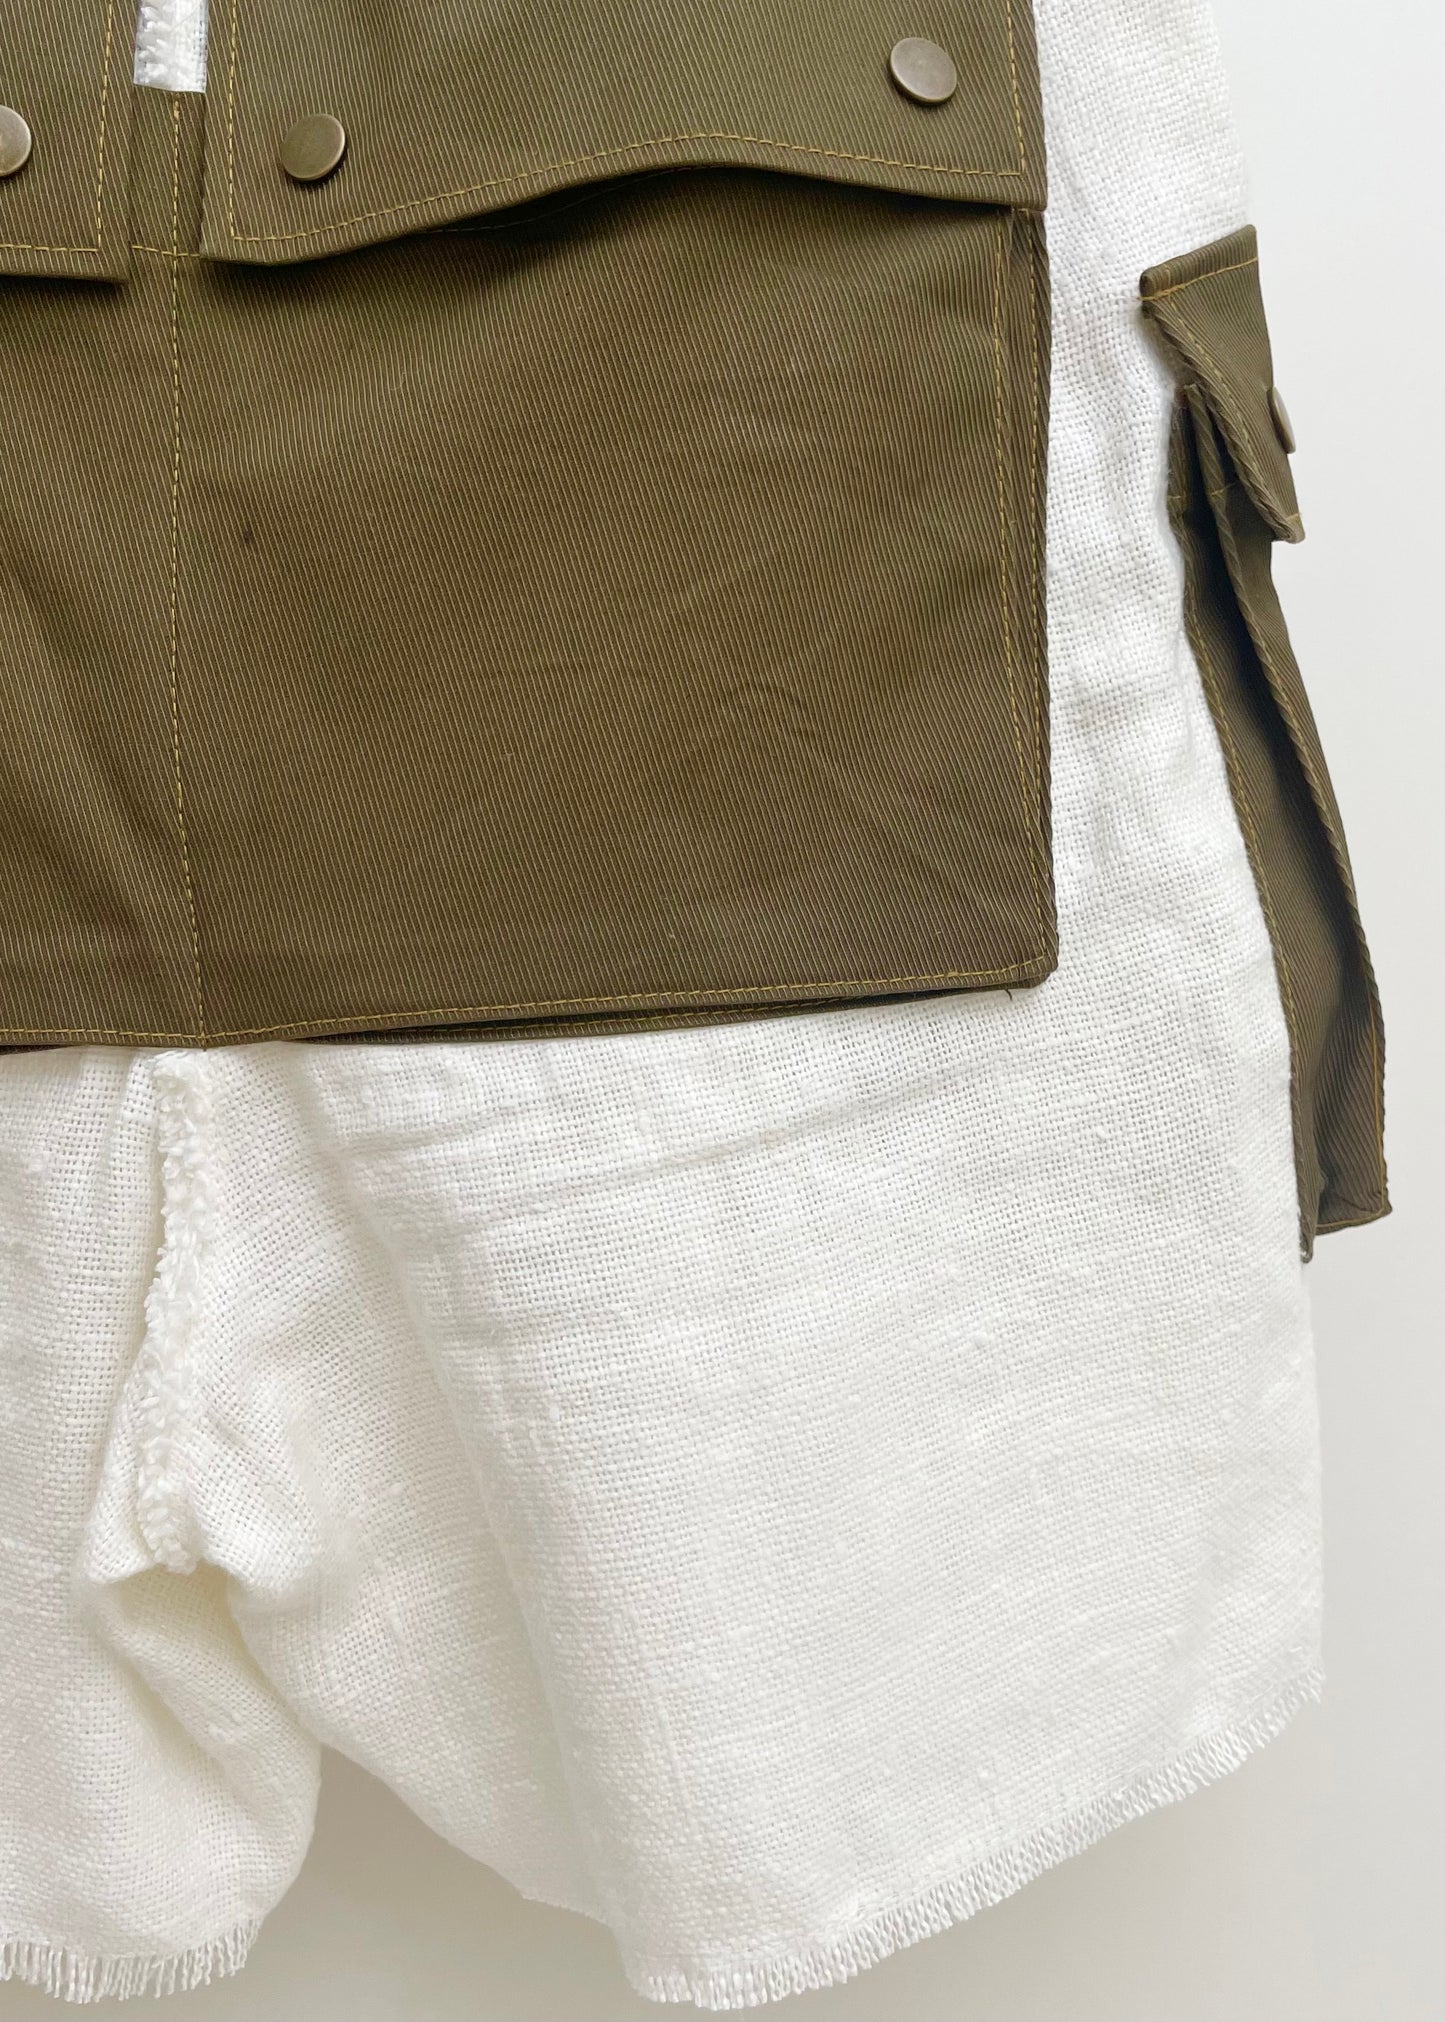 White & Olive // Cargo Shorts